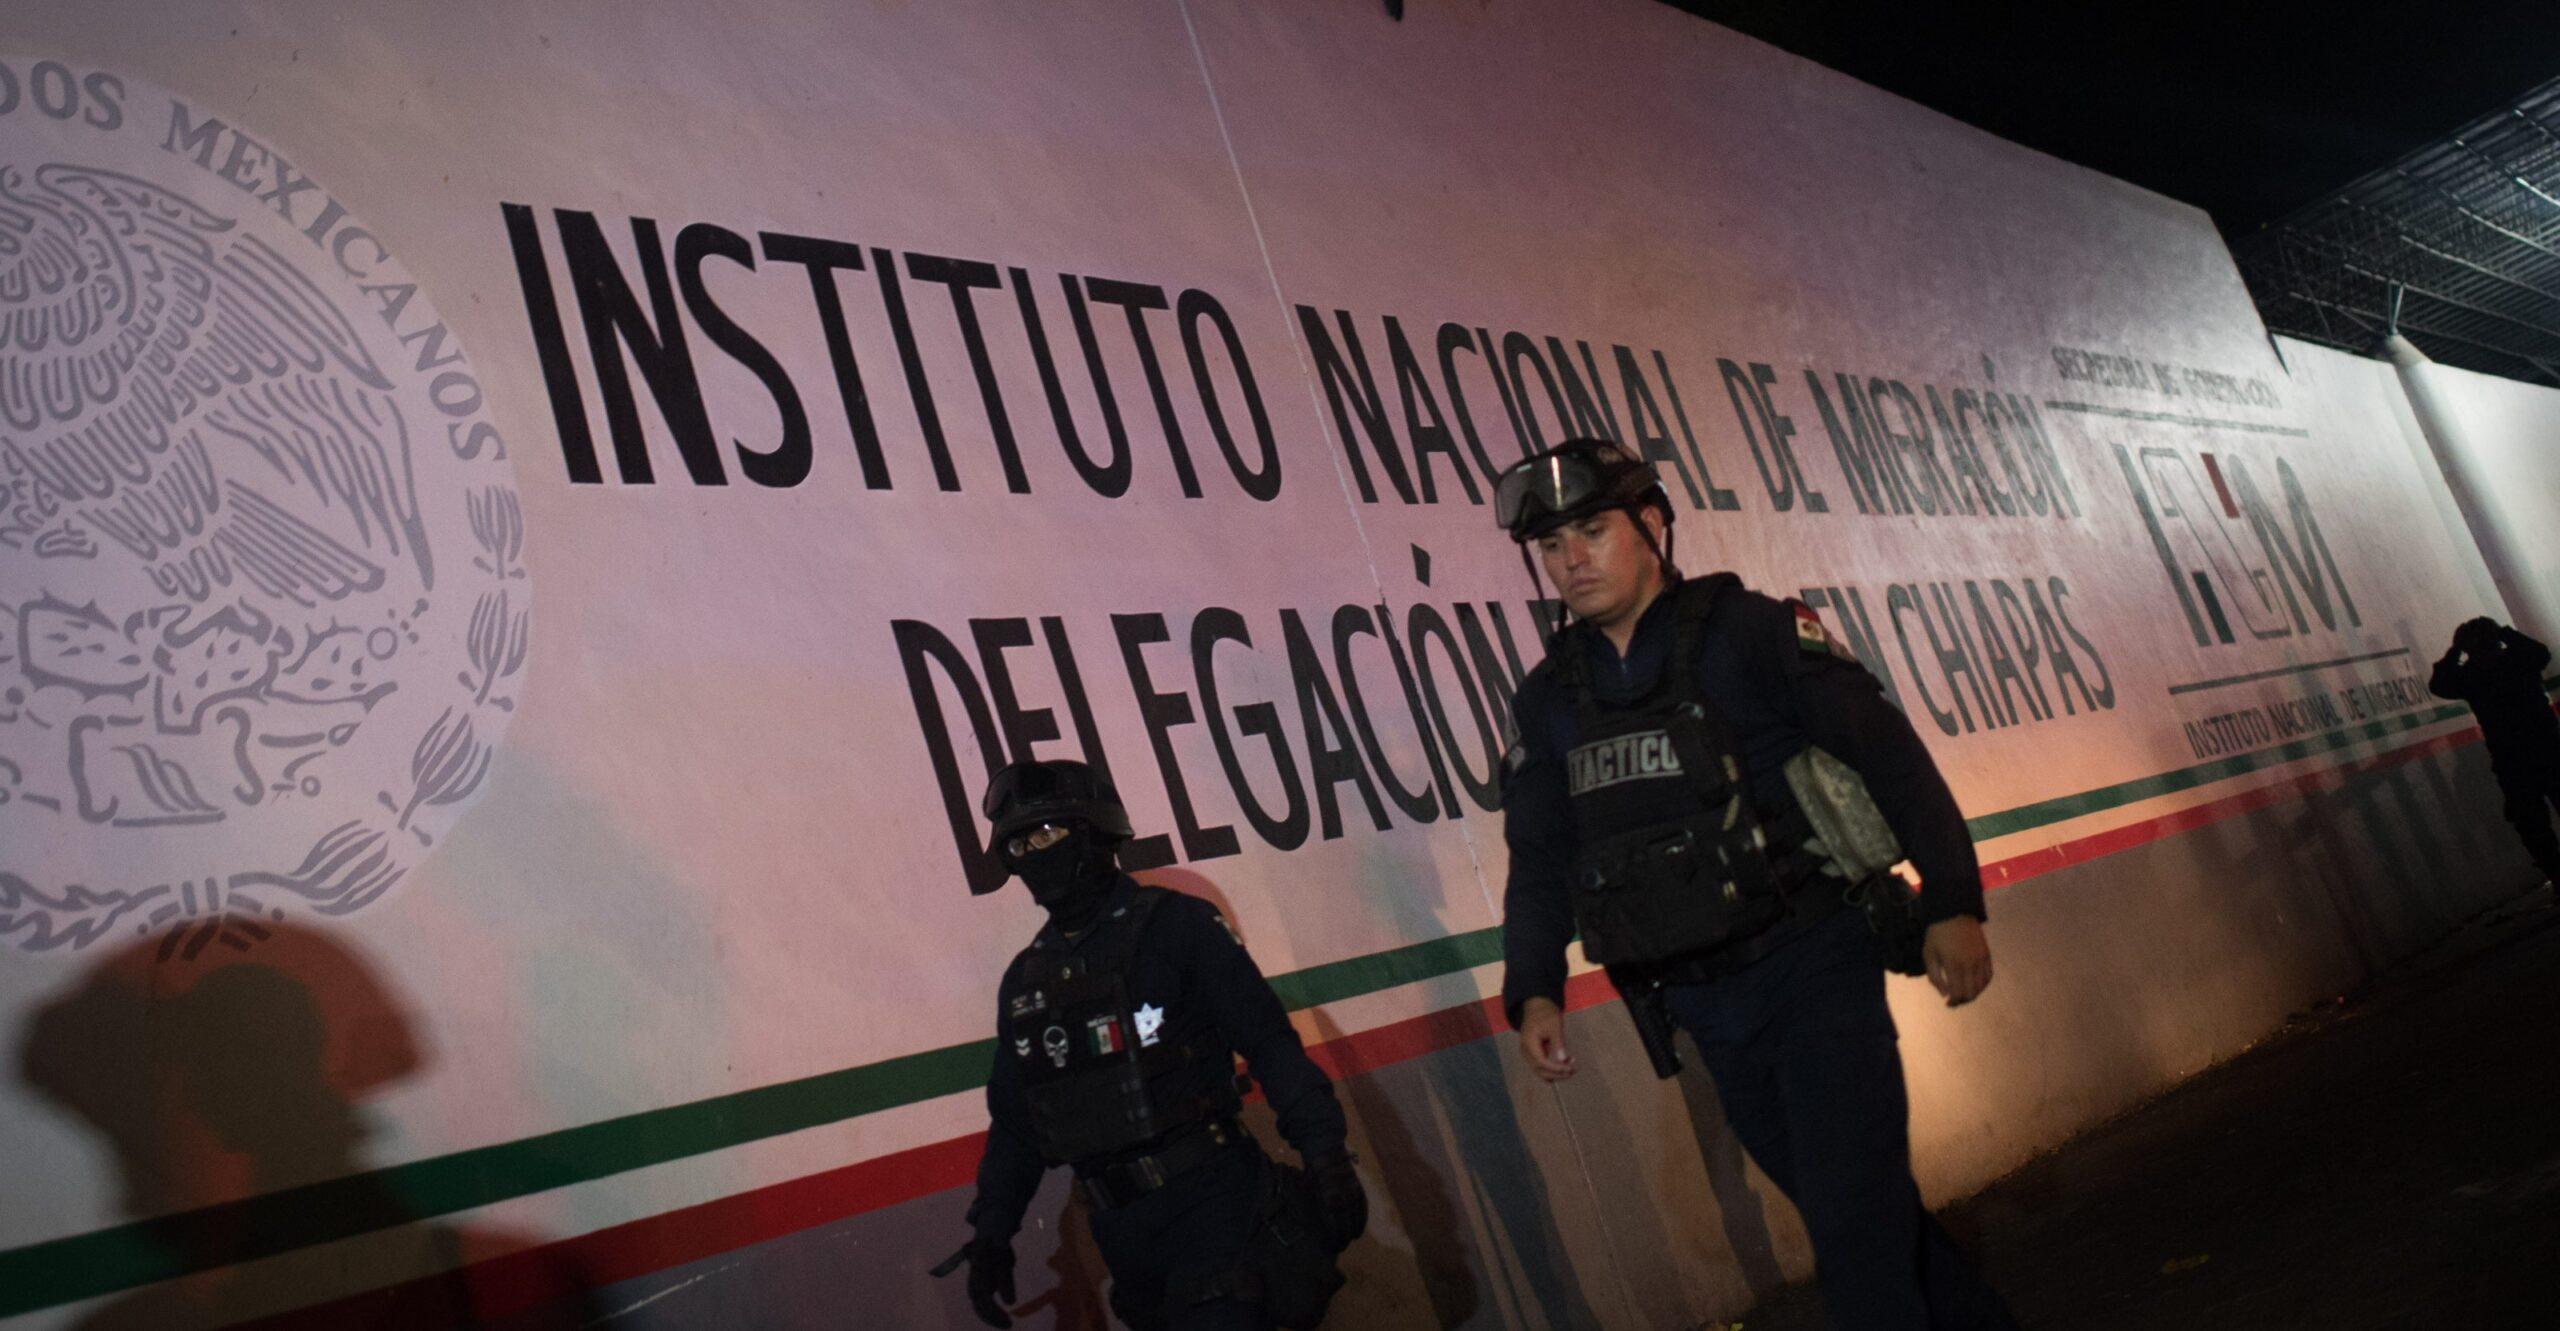 Autoridades reportan nuevo intento de fuga y disturbios en estación migratoria de Tapachula, Chiapas